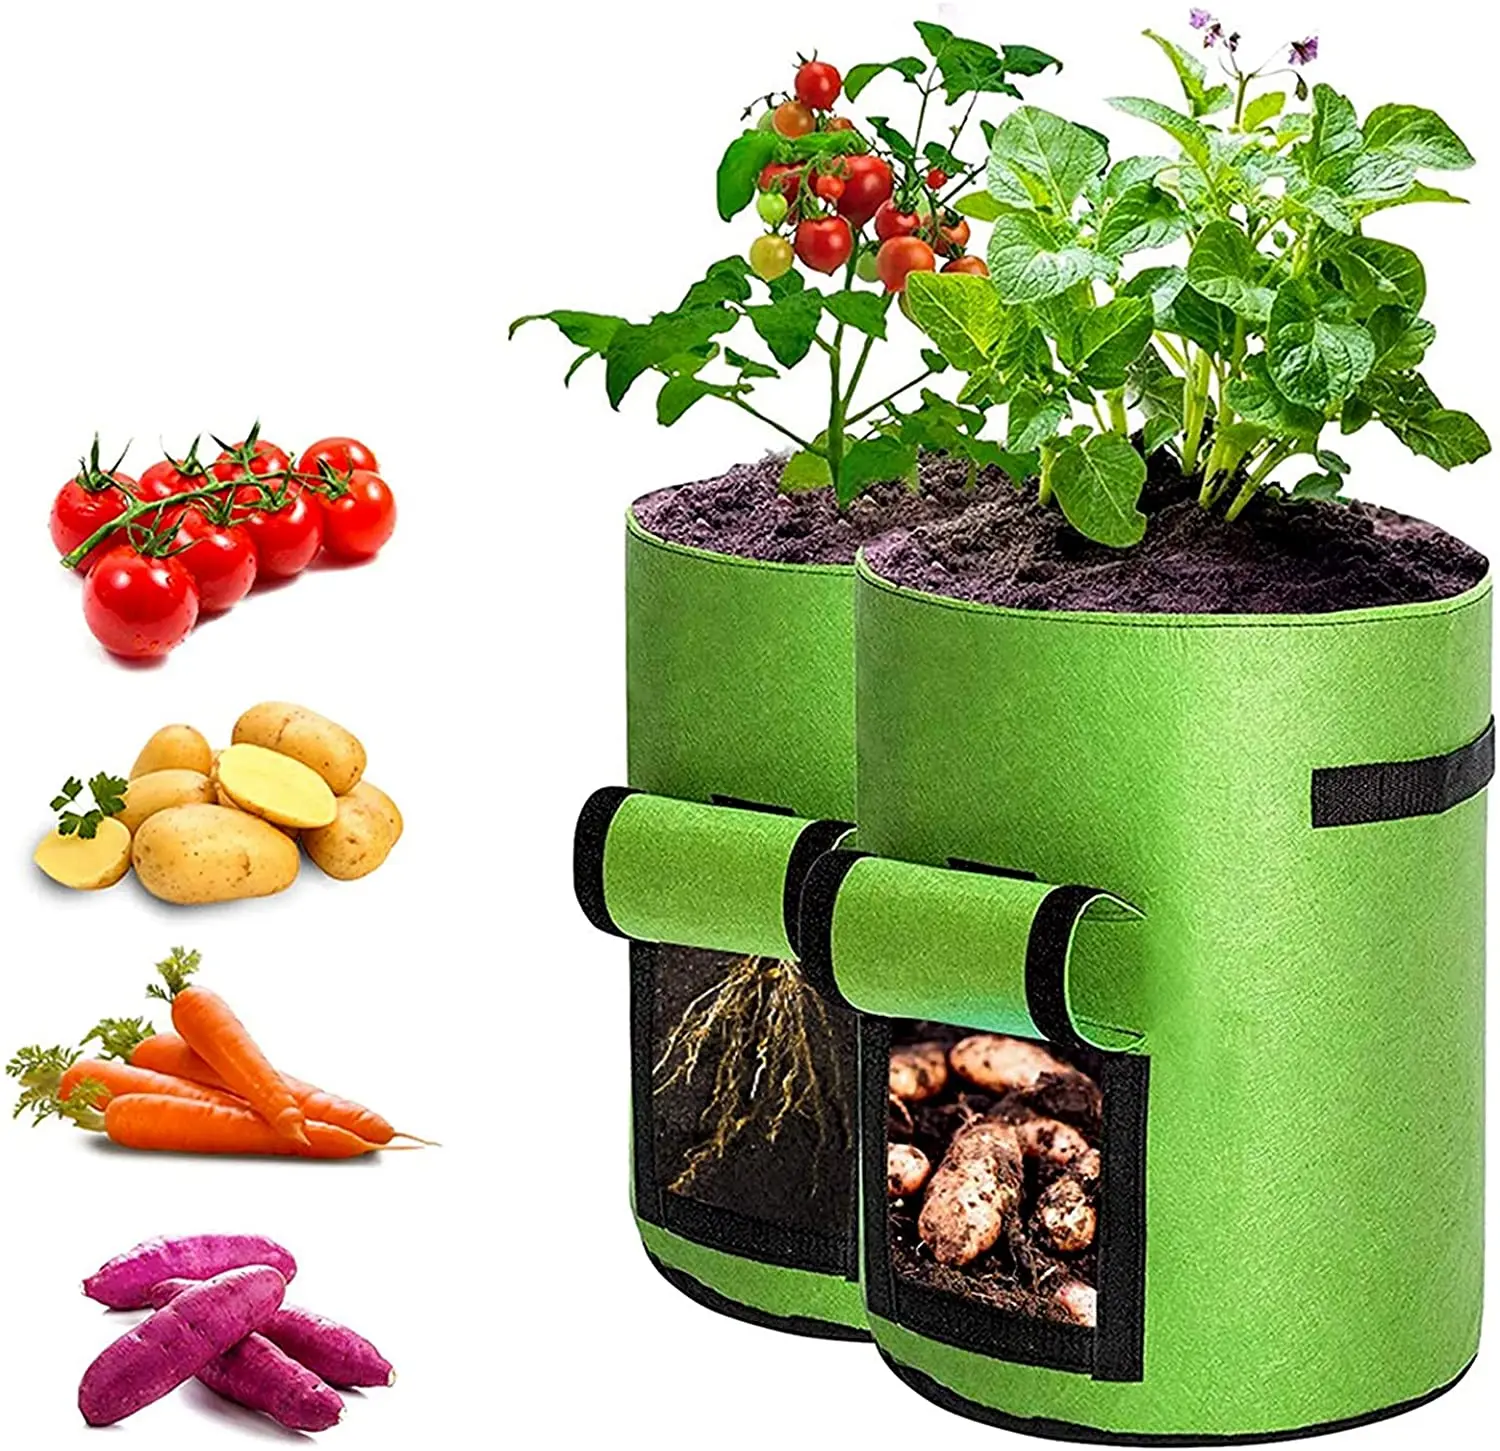 

3 5 7 10 15 20 25 30 100 Gallon Non Woven Planter Grow Bags Aeration Fabric Pots Garden Potato felt grow bags, Green